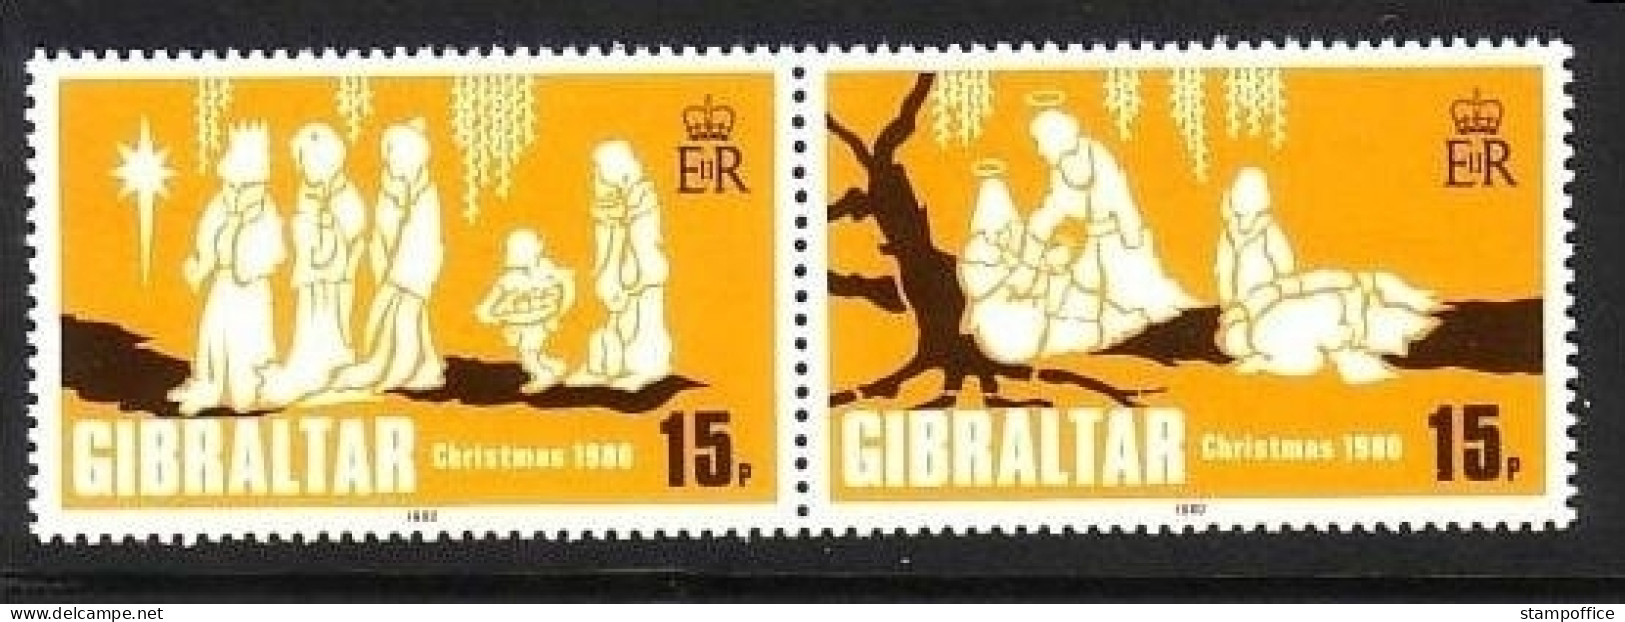 GIBRALTAR MI-NR. 413-414 POSTFRISCH(MINT) WEIHNACHTEN 1980 - Gibraltar